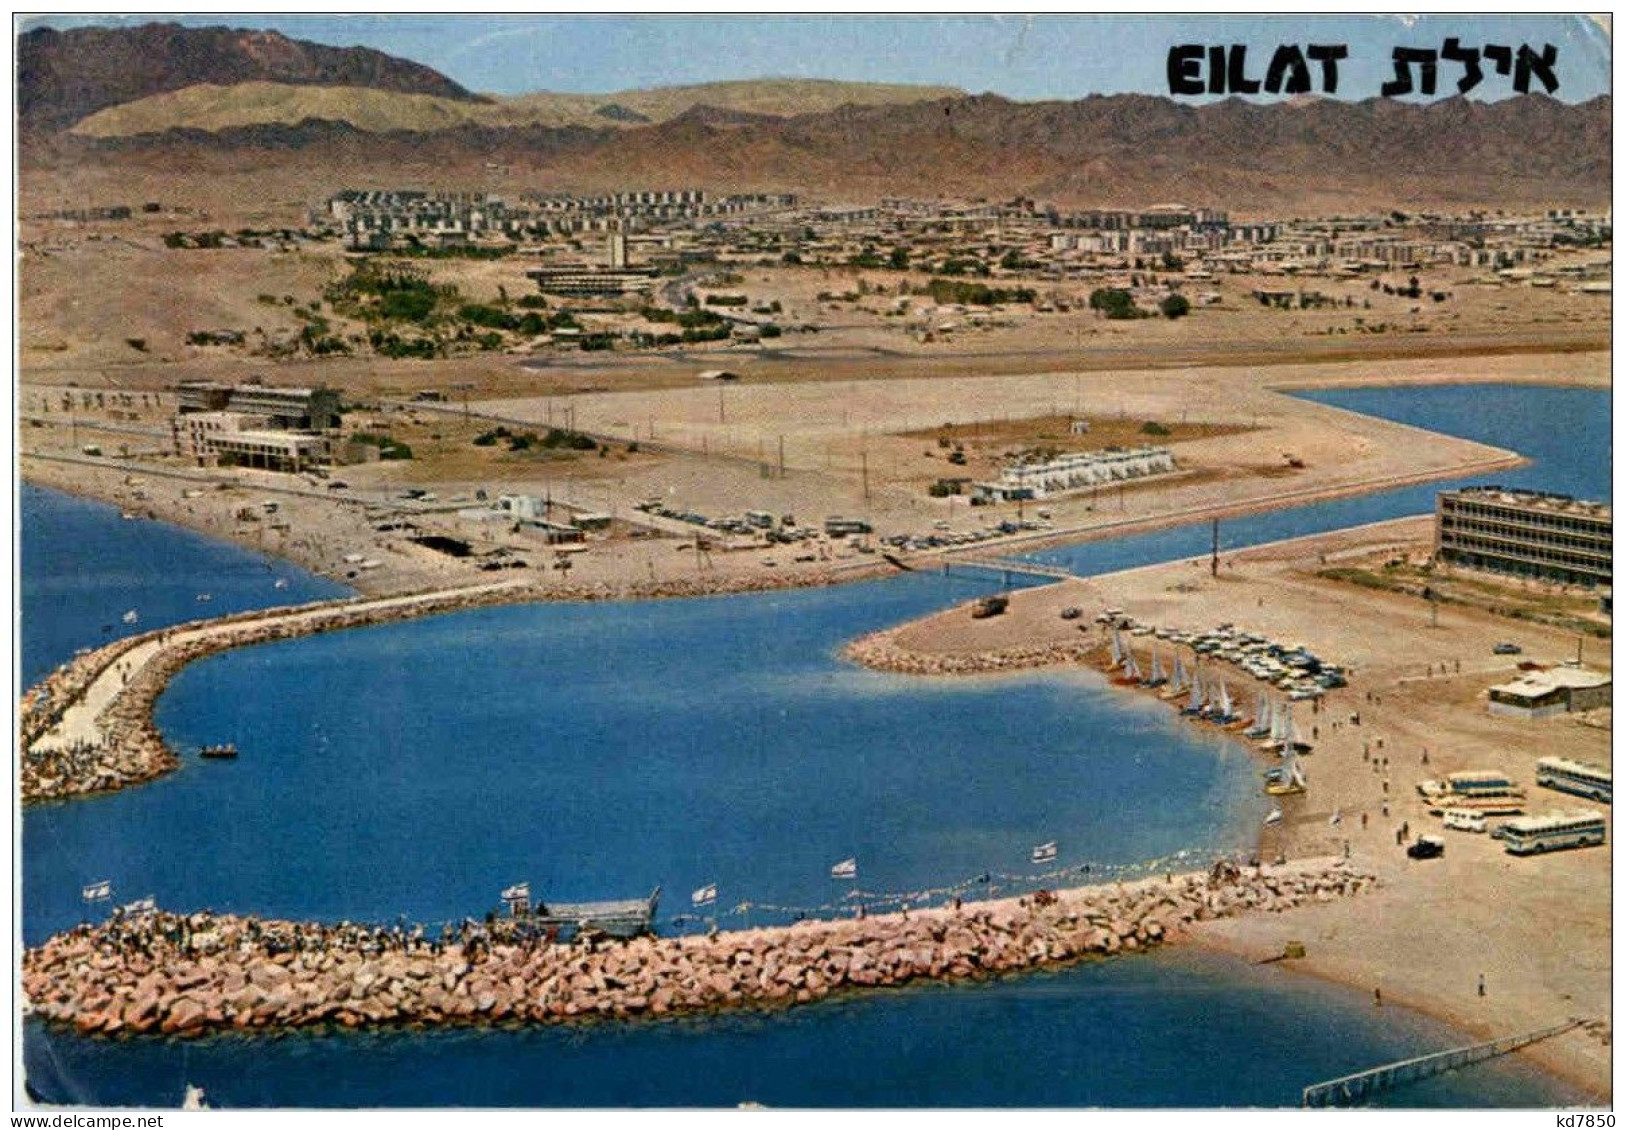 Eilat - Israel